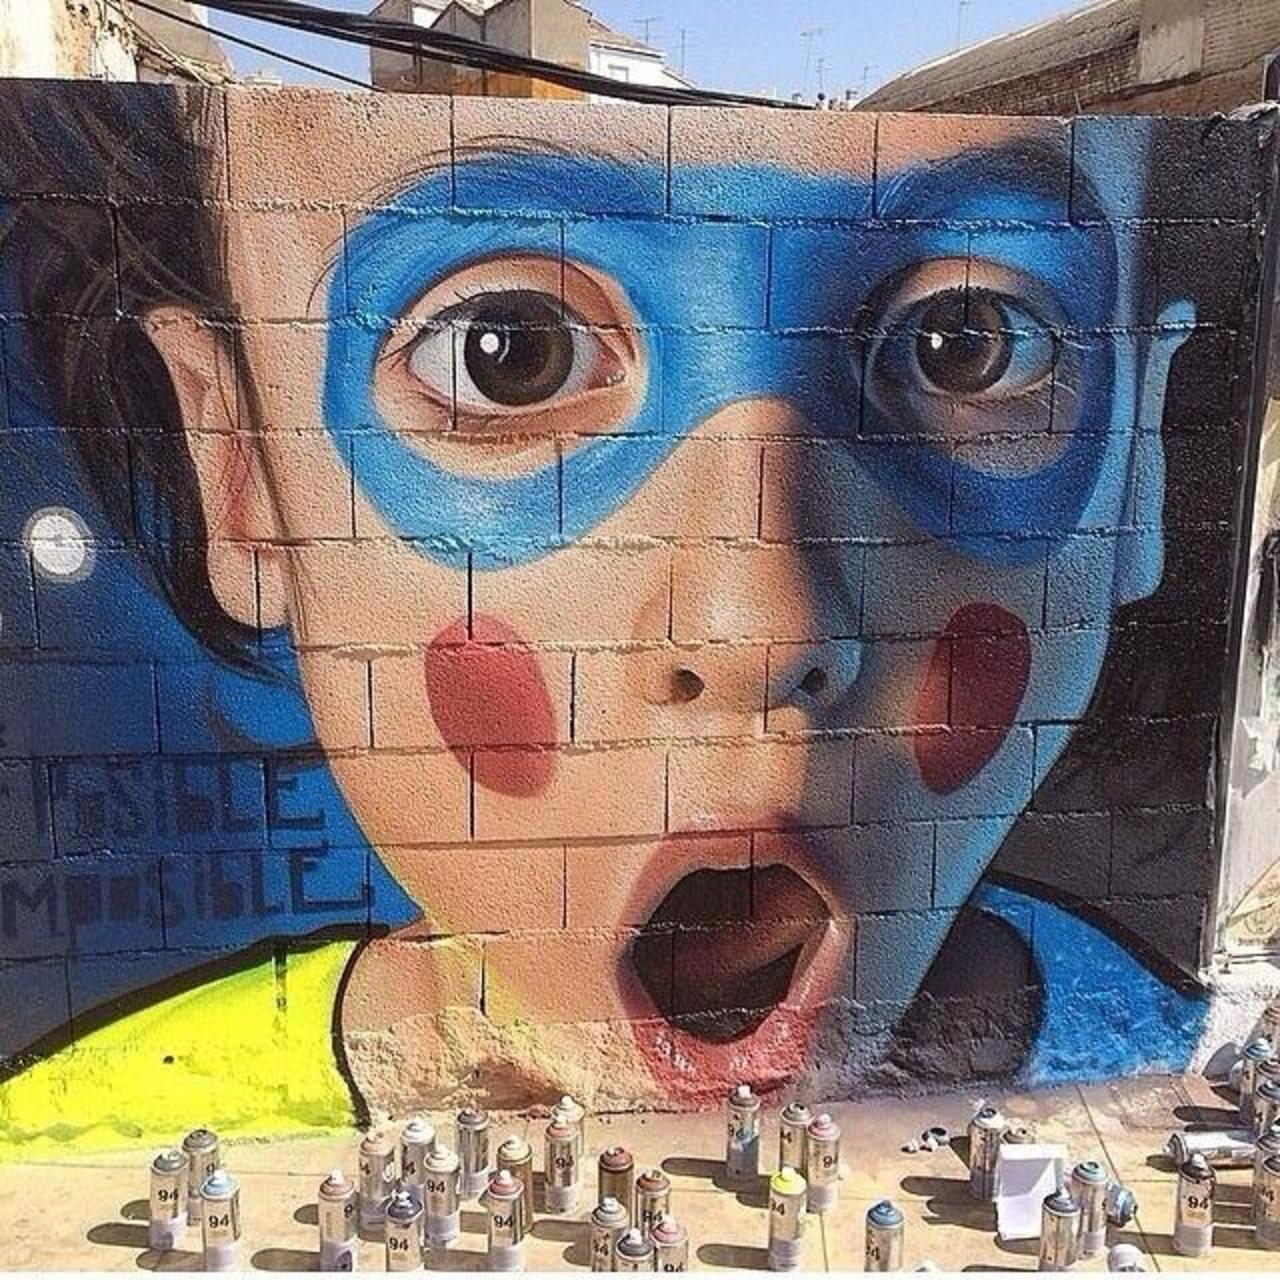 Artist @Belinwan unique Street Art portrait piece located in Linares, Spain #art #mural #graffiti #streetart http://t.co/K6GjY5aMi6